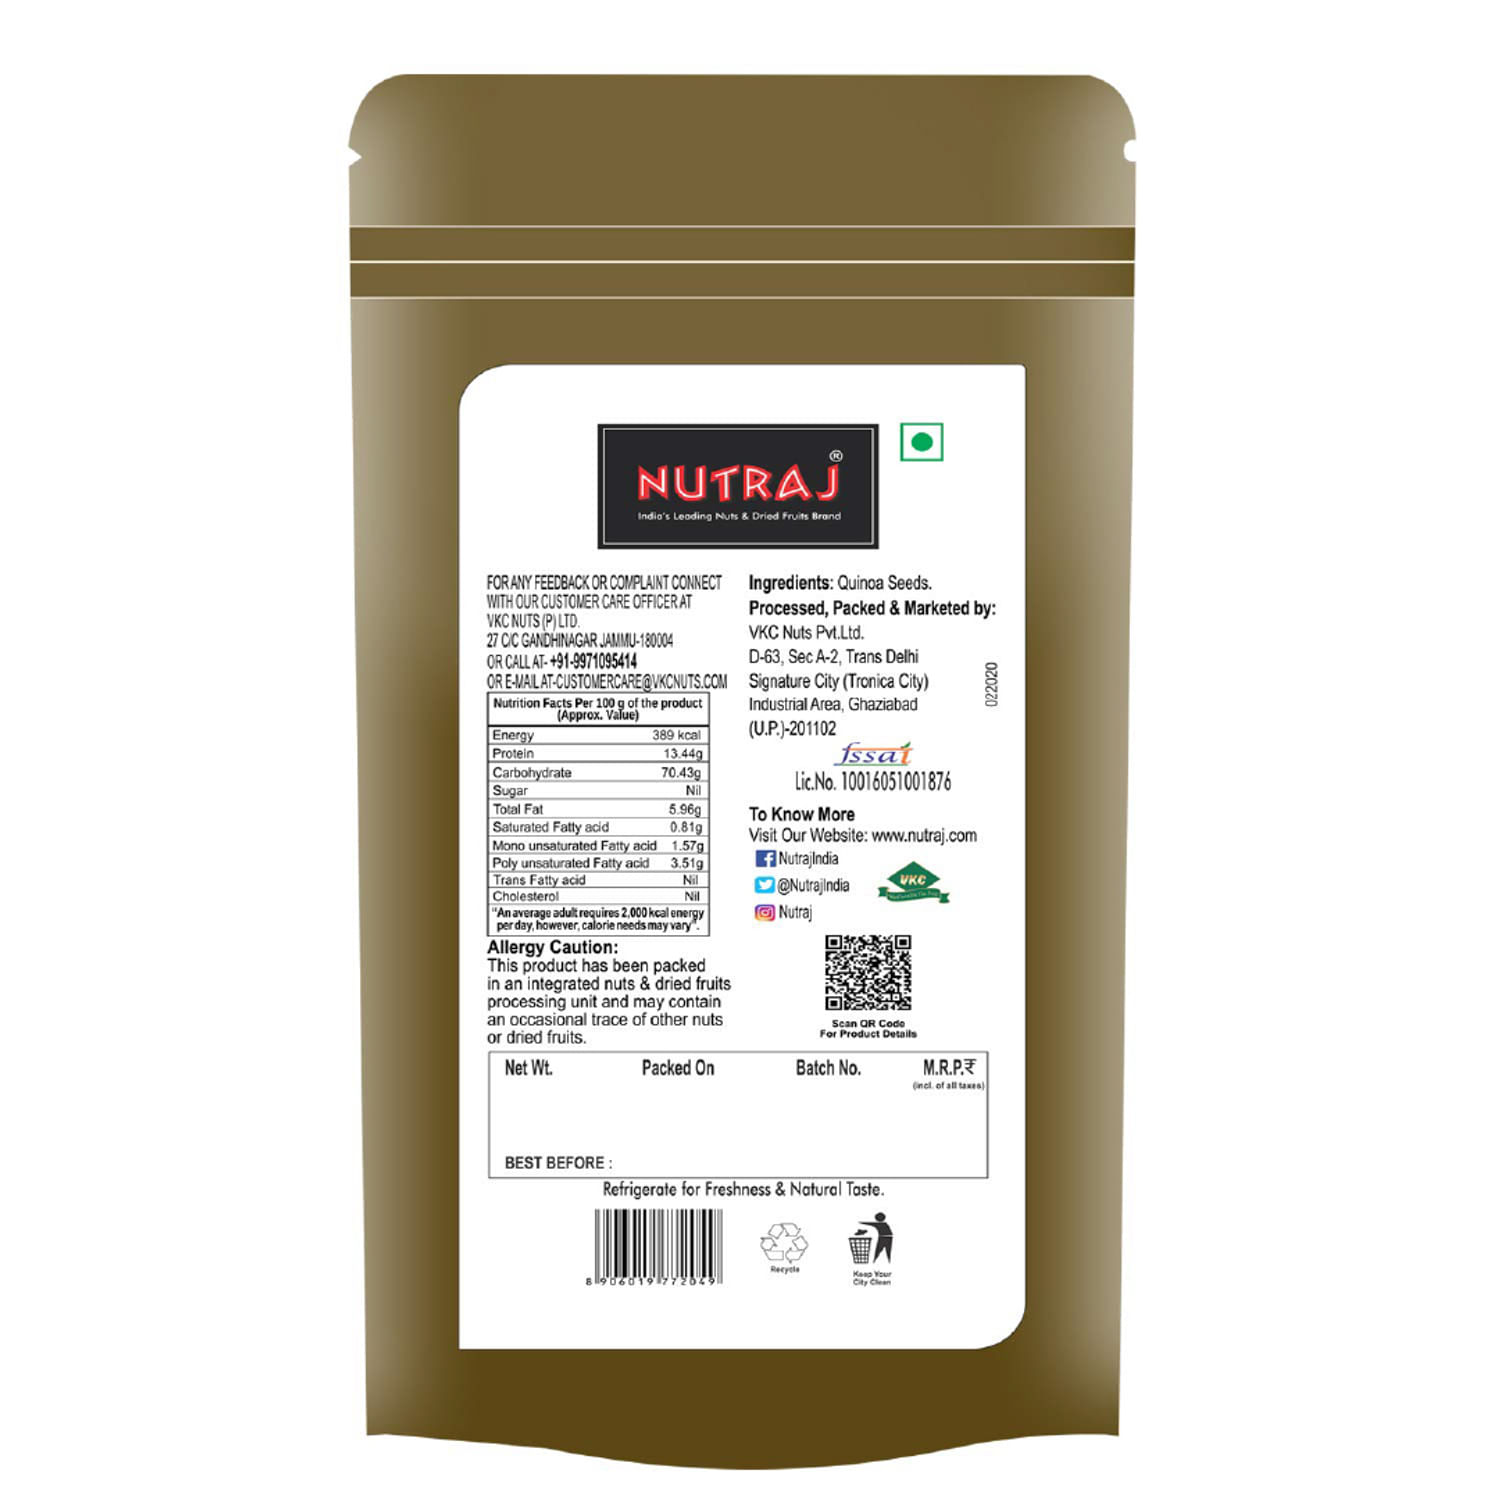 Nutraj Quinoa Seeds 200g